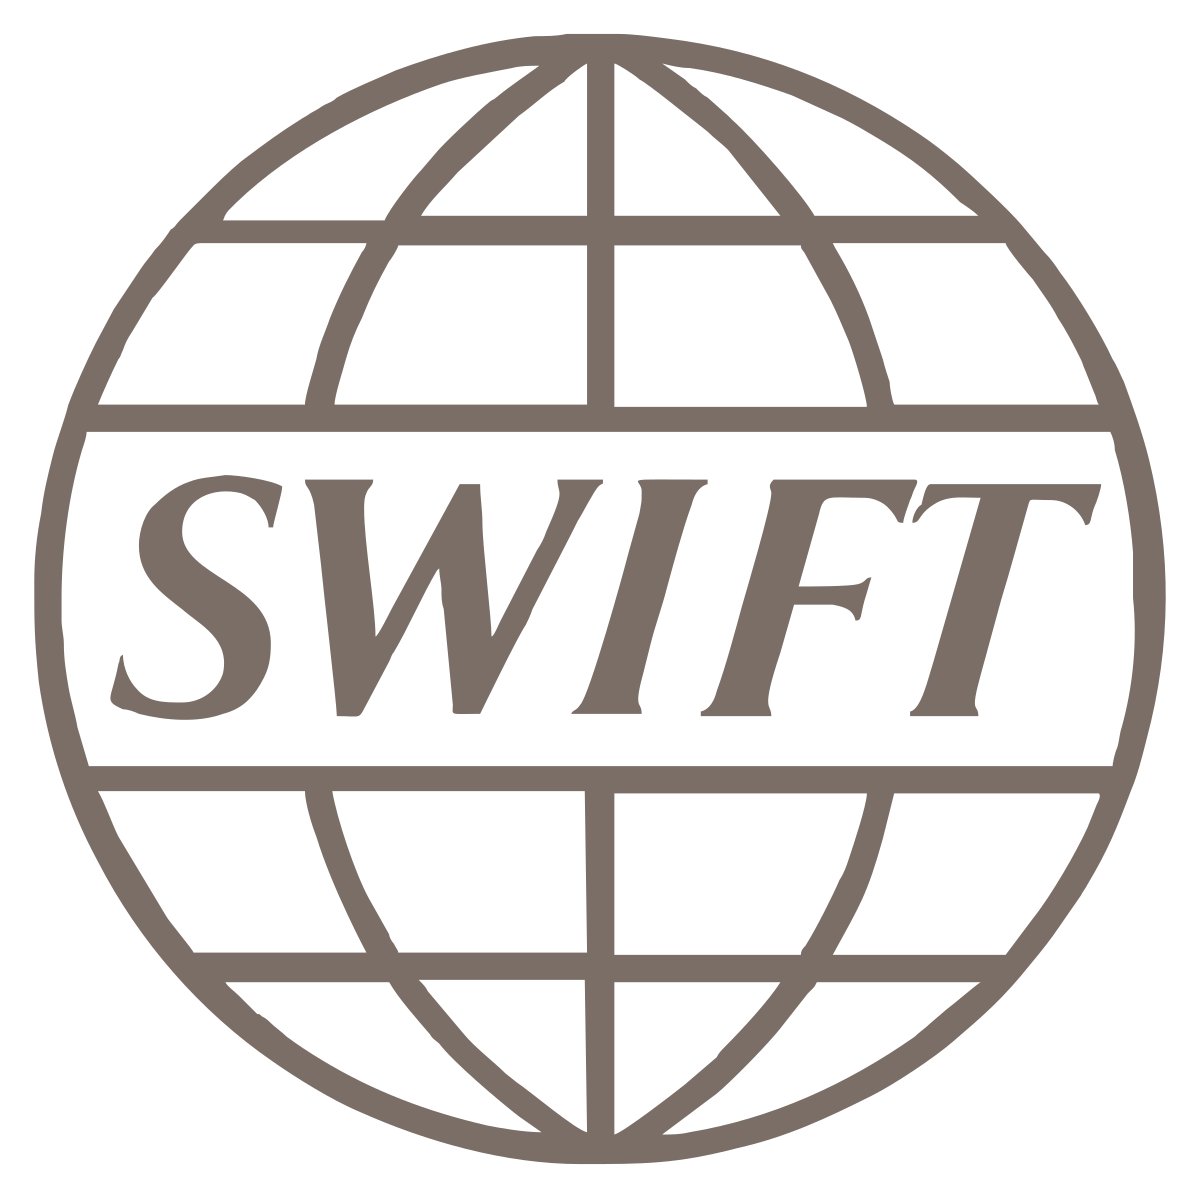 SWIFT ist „Facebook für internationale Banken“, wo statt Likes Dollar verschickt werden.  Eine Kürzung könnte Putins Regime zerstören, aber es würde Inflation in den Westen bringen, die Notwendigkeit, den Green Deal zu stoppen, oder den Zusammenbruch des Dollars